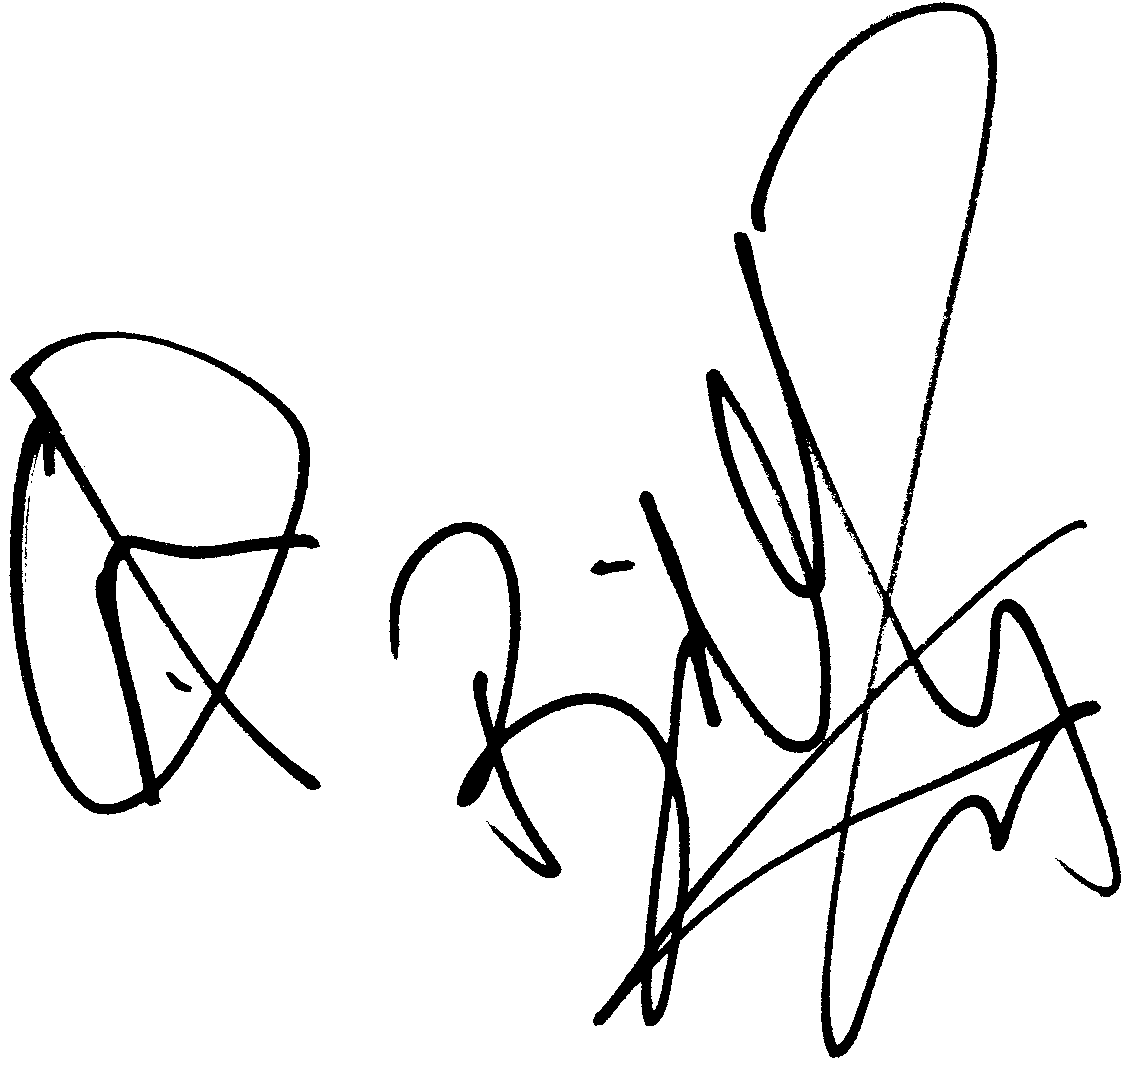 Billy Zane autograph facsimile